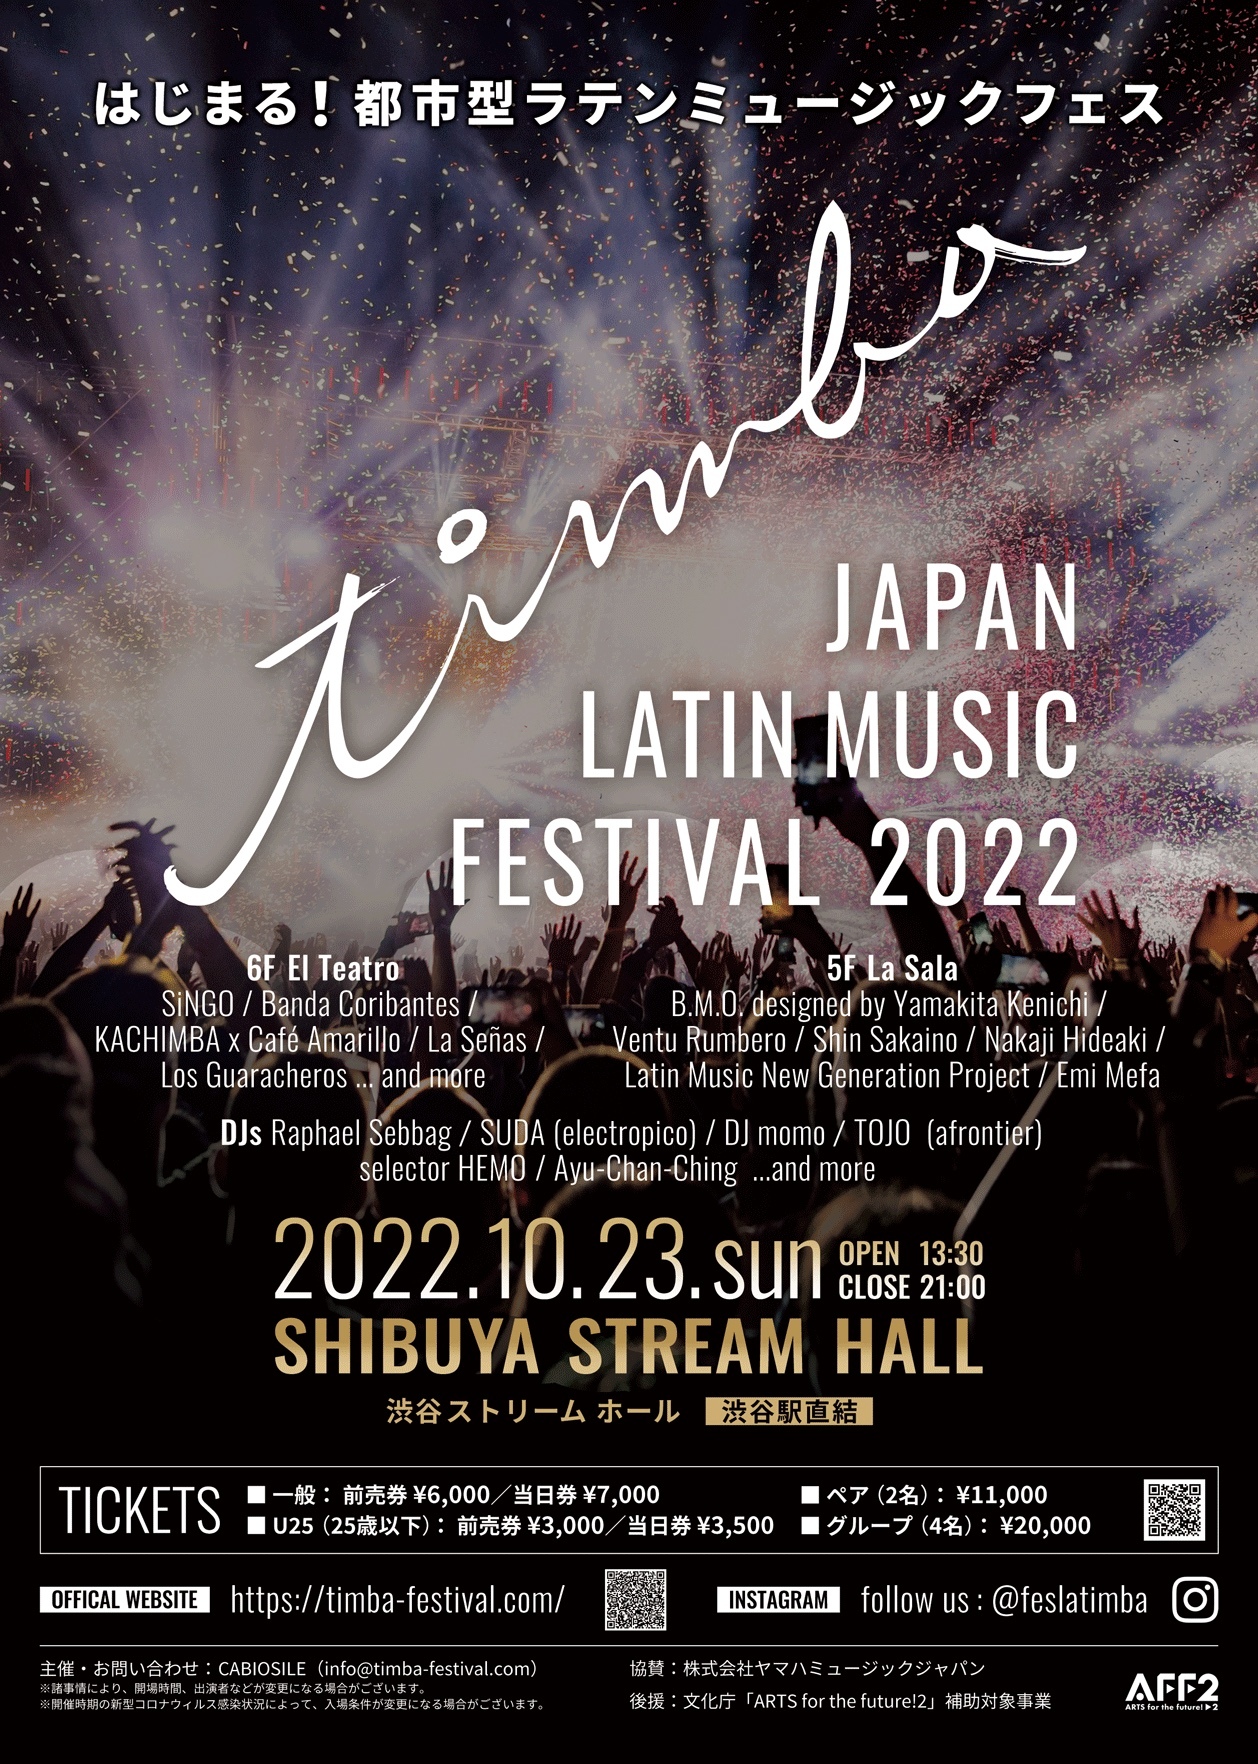 日本最大規模！ラテンミュージックのためのフェスティバル誕生！
JAPAN LATIN MUSIC FESTIVAL 2022 “timba”　
2022/10/23渋谷ストリームホールにて開催！